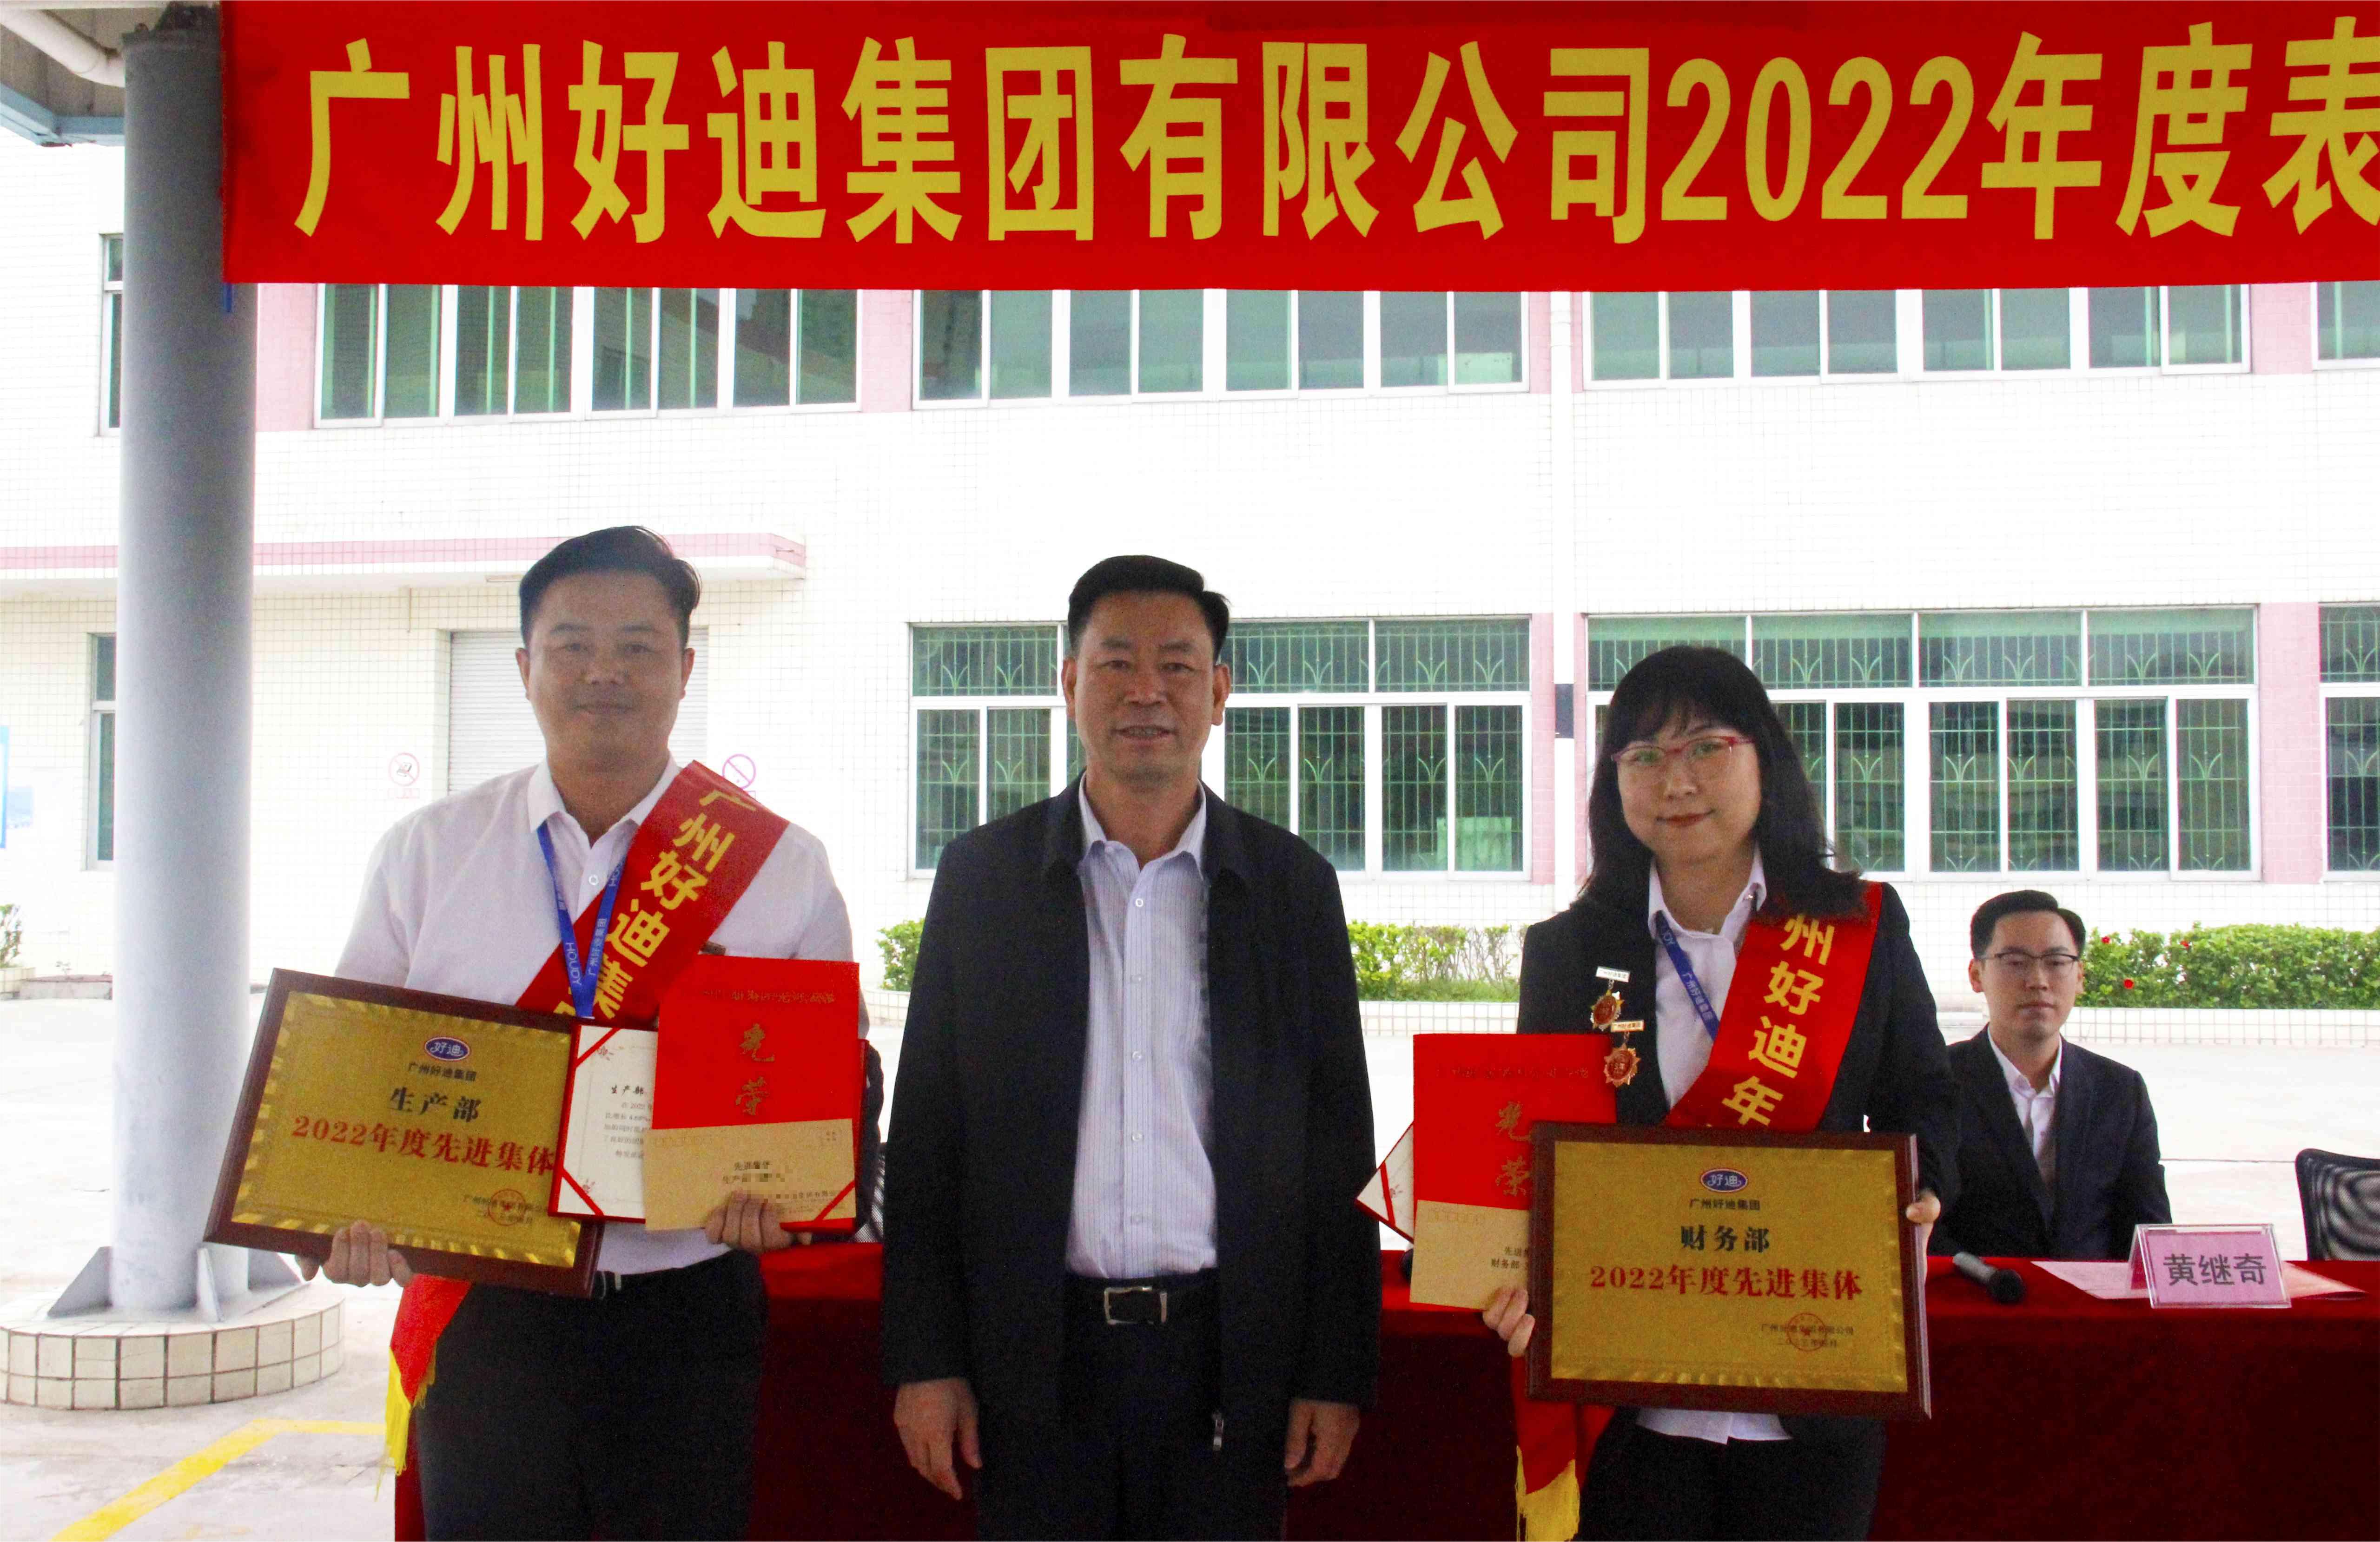 初心未變 破浪前行——廣州好迪集團隆重召開2022年度表彰大會